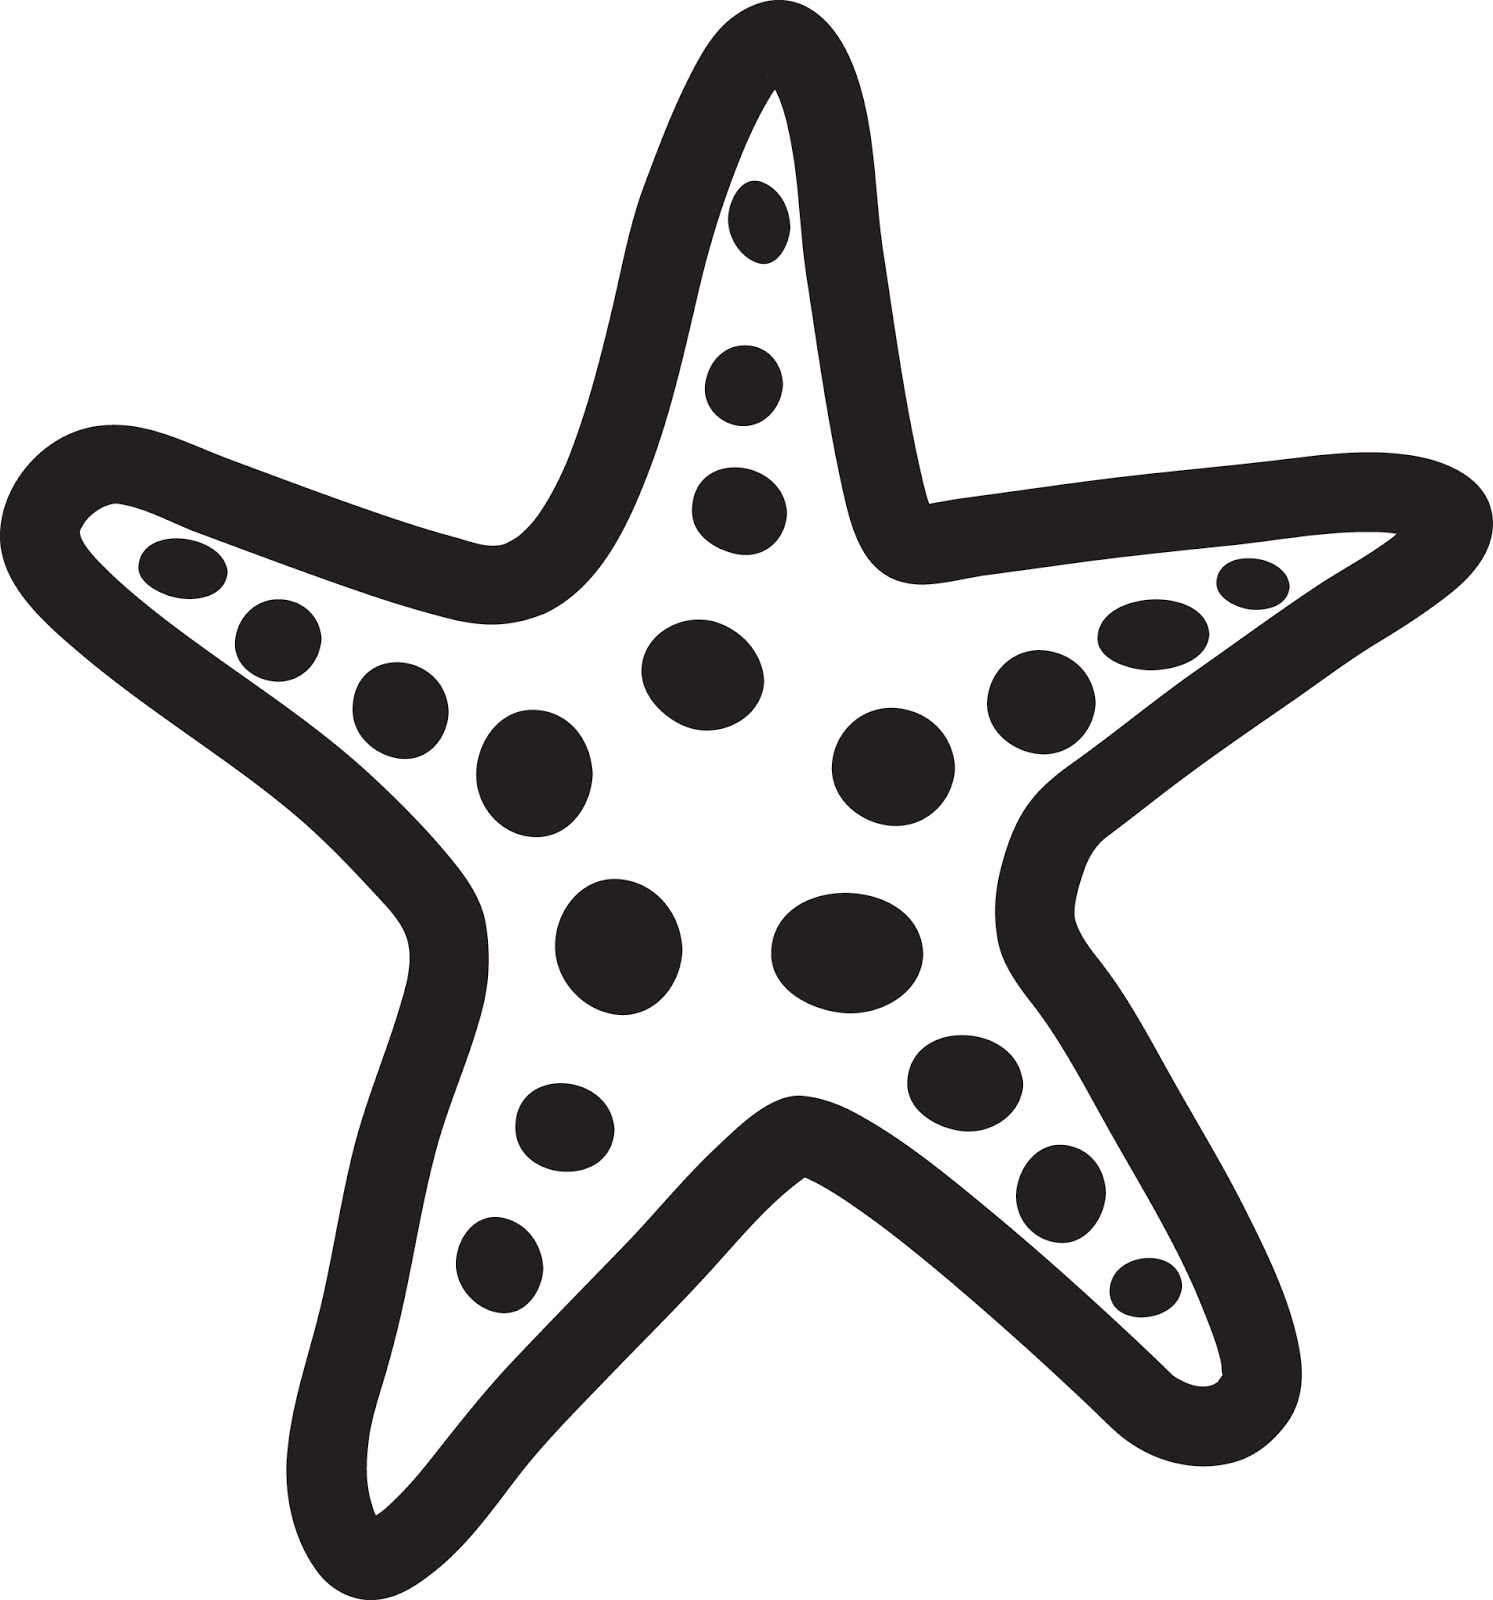 Starfish clipart 4 - Clipart Starfish